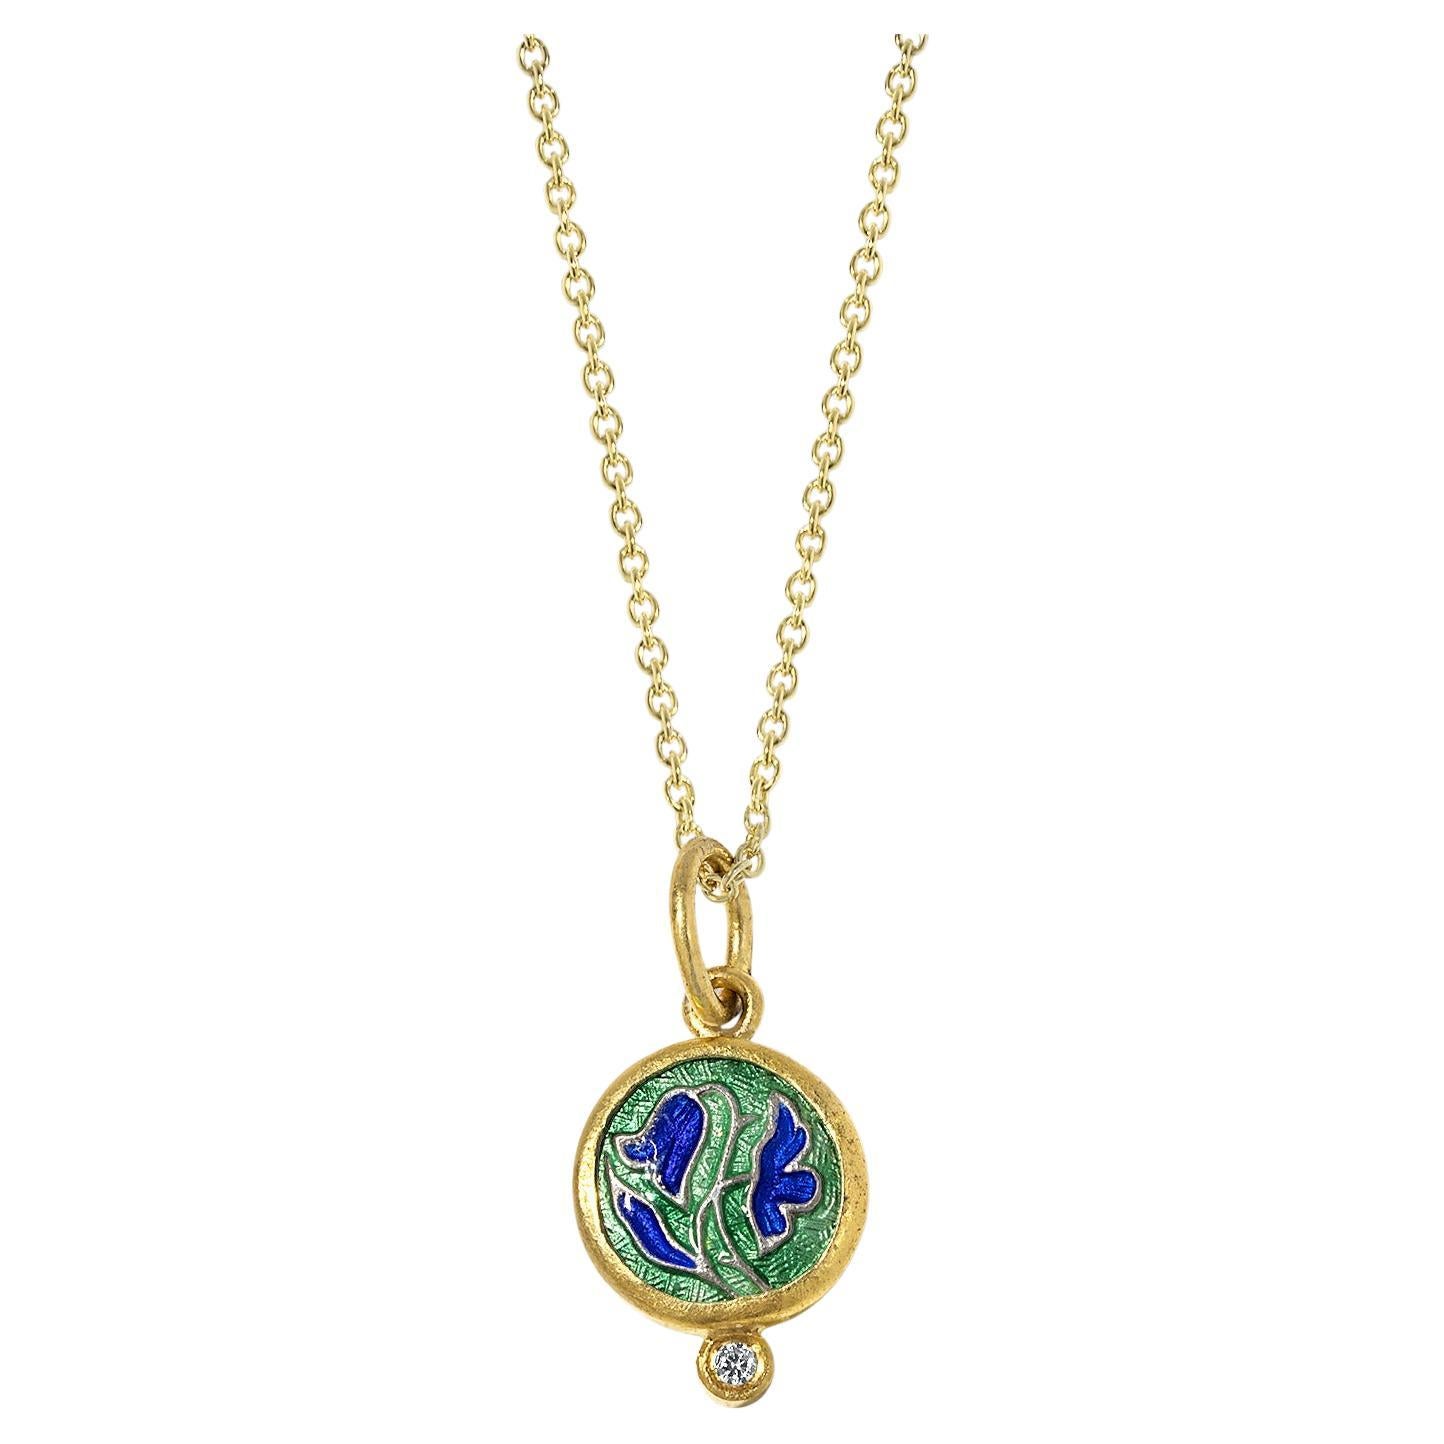 Emaille-Tulips-Charm in Grün & Blau, Amuletten-Anhänger-Halskette mit Diamant 24k Gold